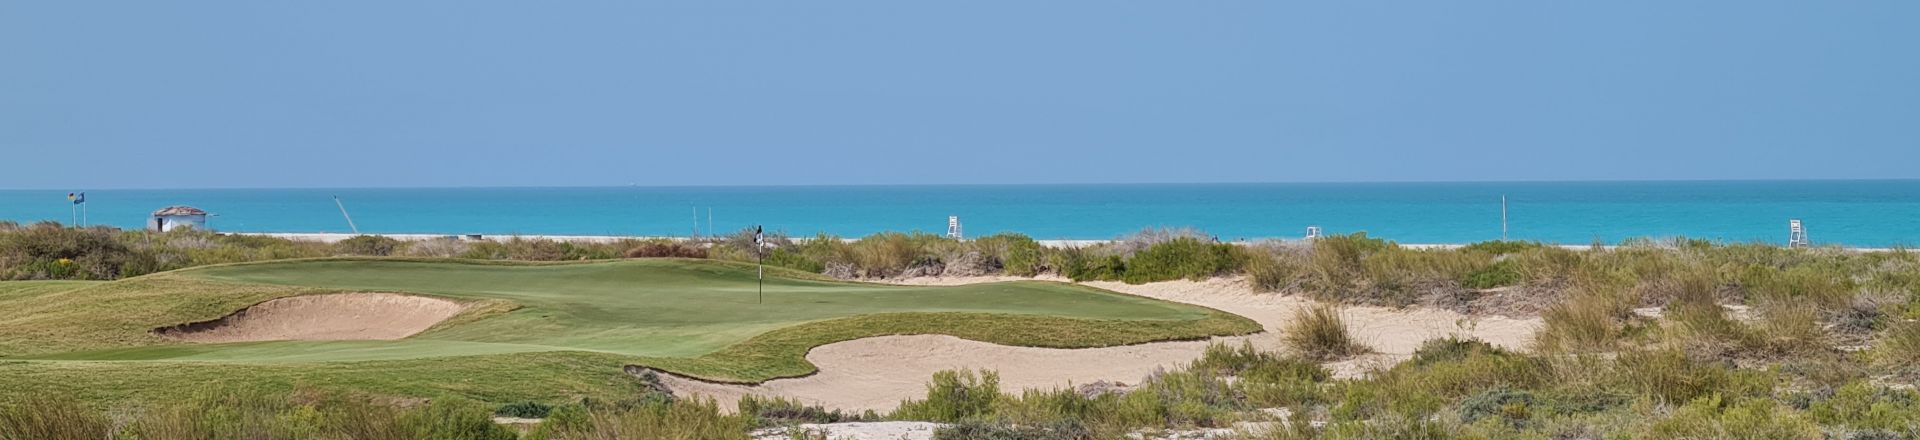 Saadiyat Beach Golf Club in Abu Dhabi